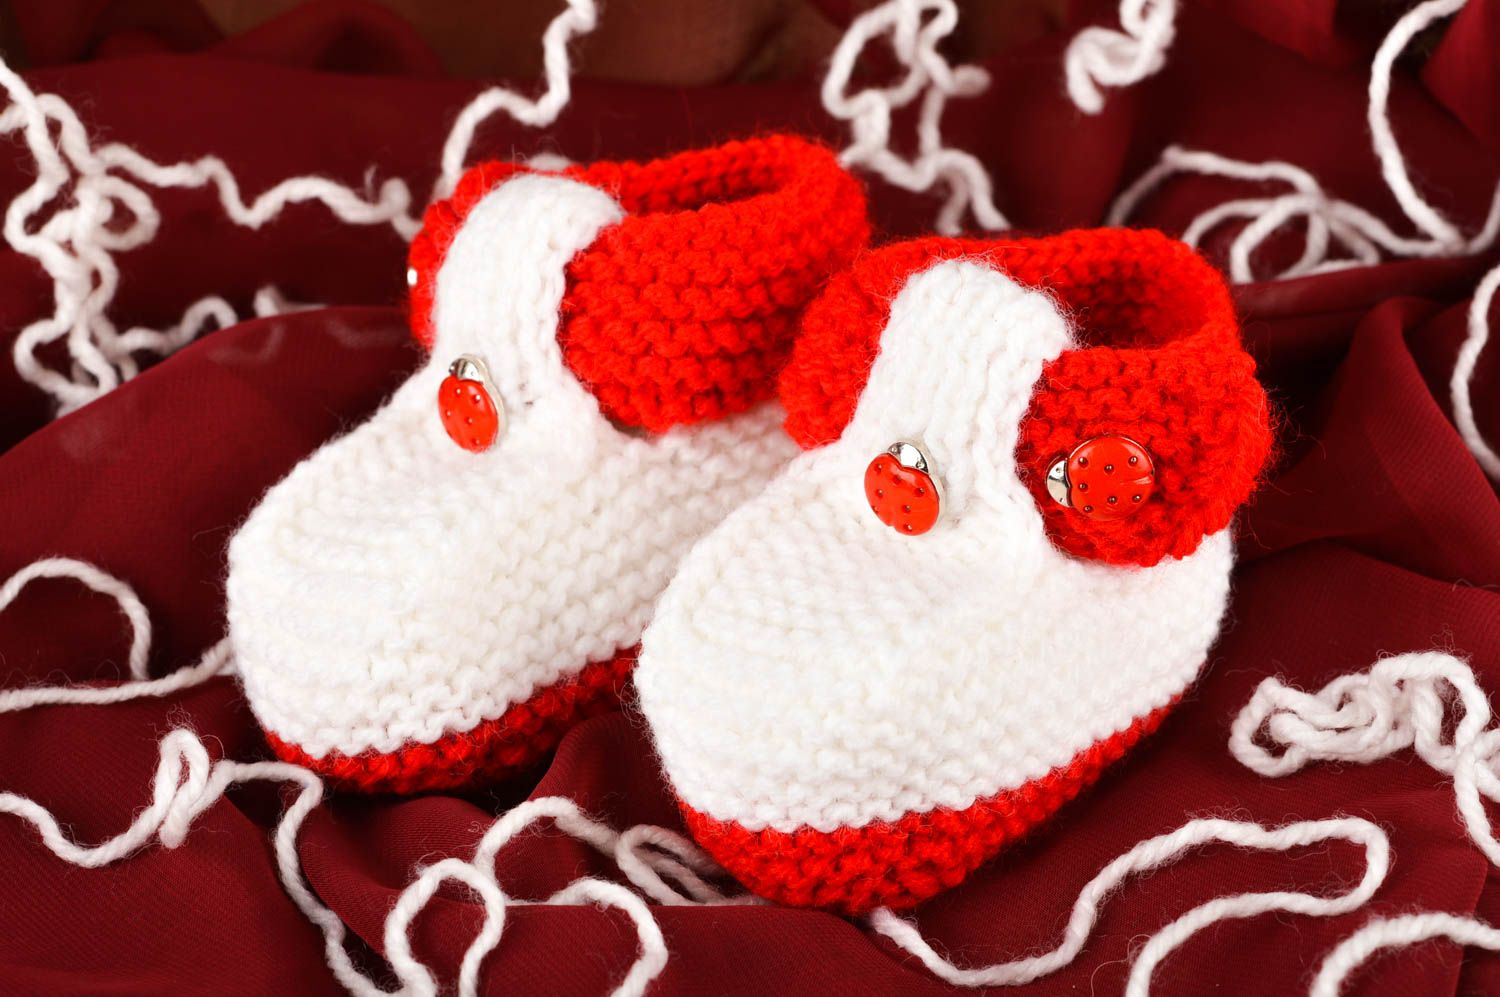 Beautiful handmade crochet baby booties baby accessories warm baby booties photo 1